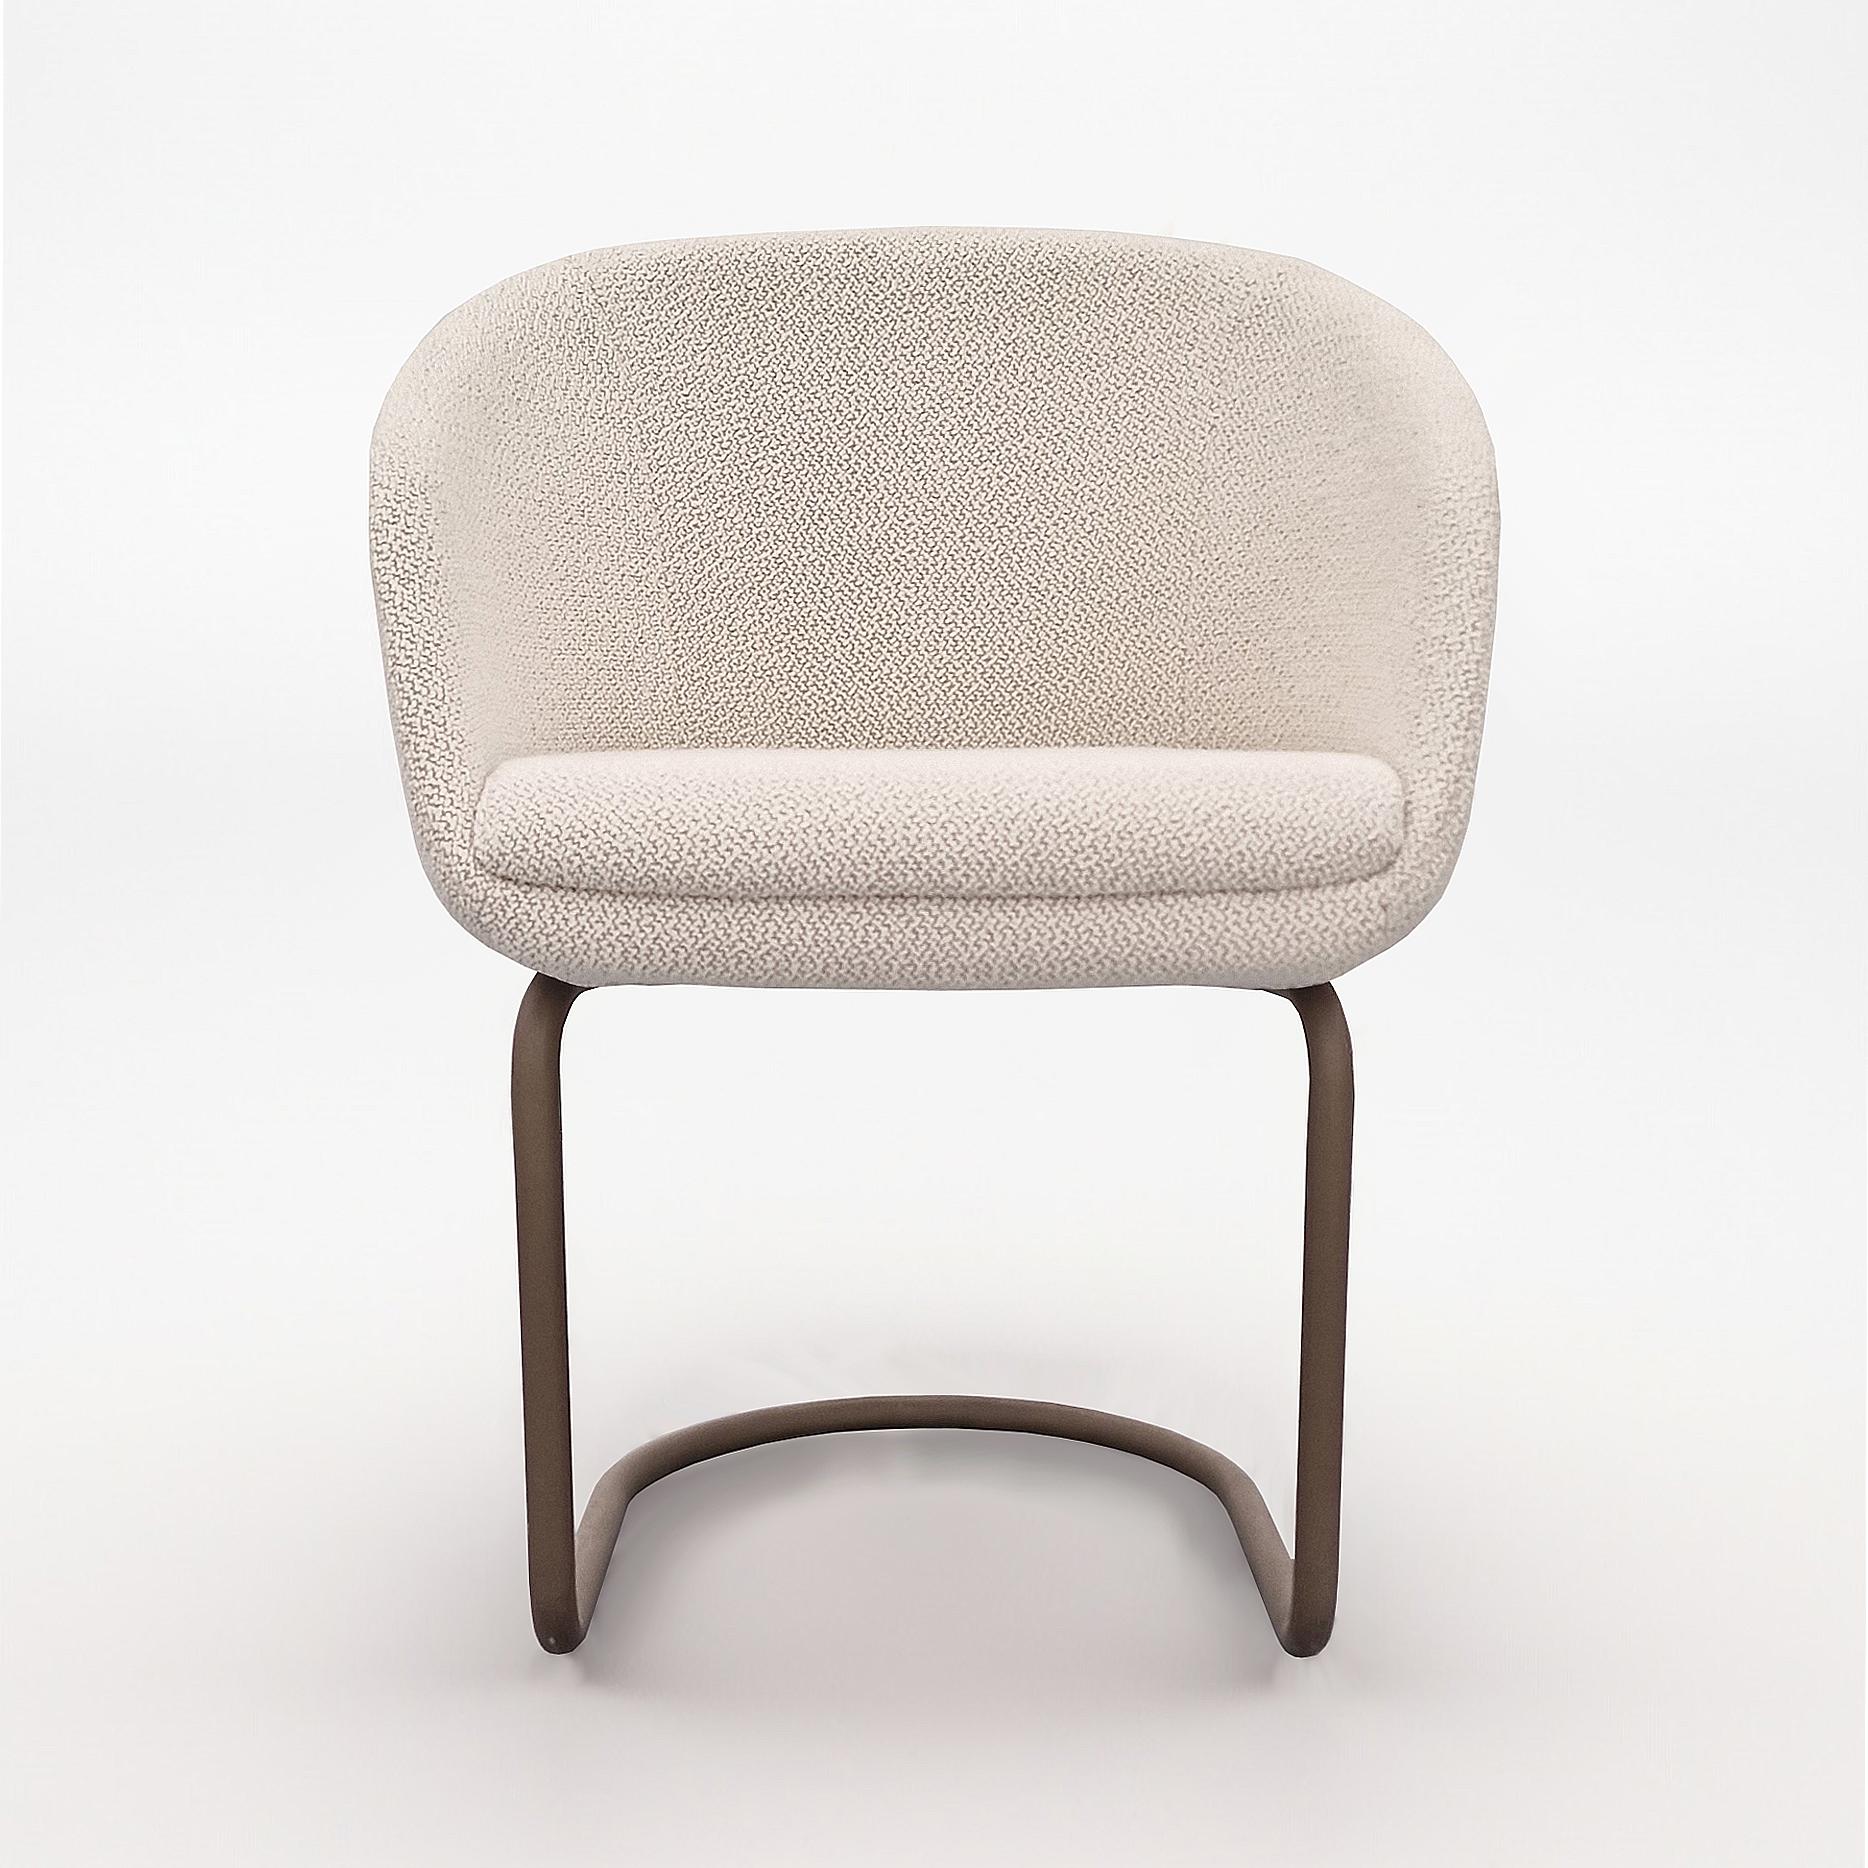 Progettata dal designer brasiliano Ricardo Antonio, allievo di Oscar Niemeyer, la sedia COME si contraddistingue per il design leggero ed elegante, grazie ad una scocca sottile e confortevole realizzata interamente in poliuretano espanso schiumato a